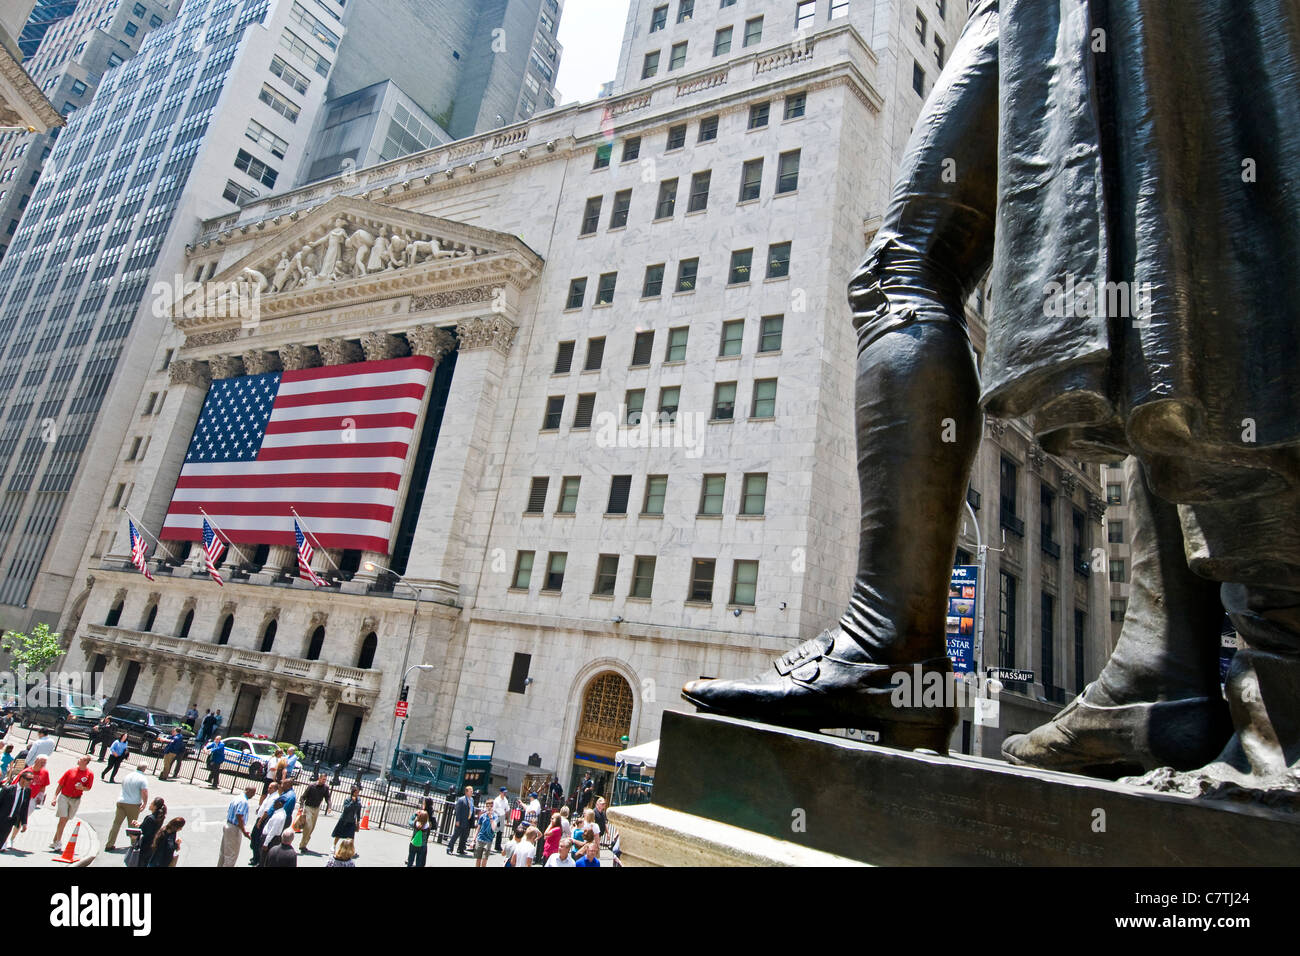 New York, NY New York Stock Exchange Building Stock Photo